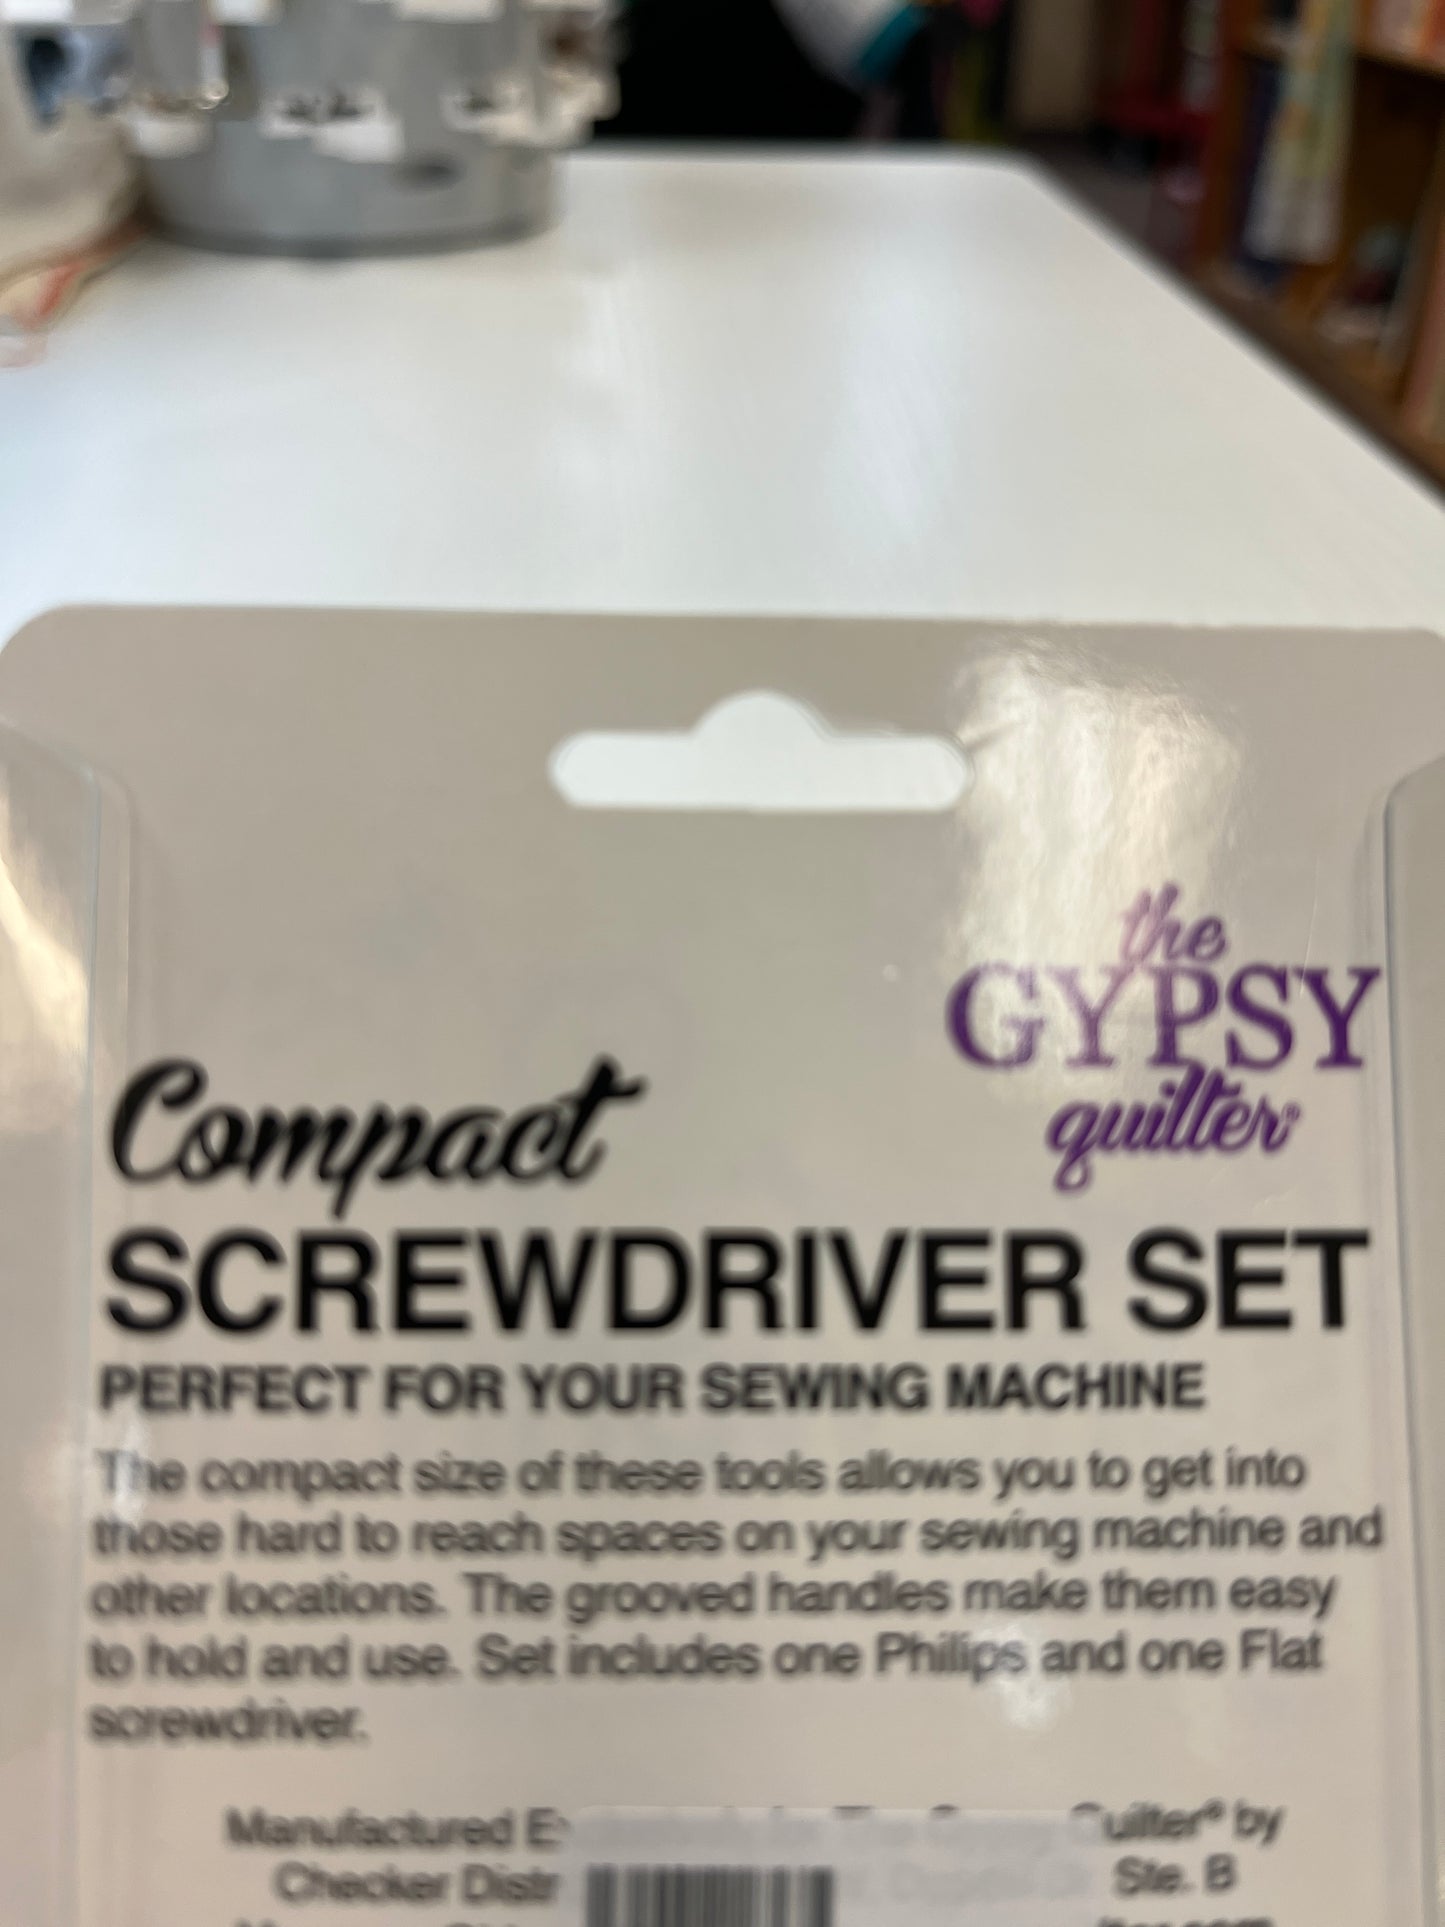 Compact Screwdriver set